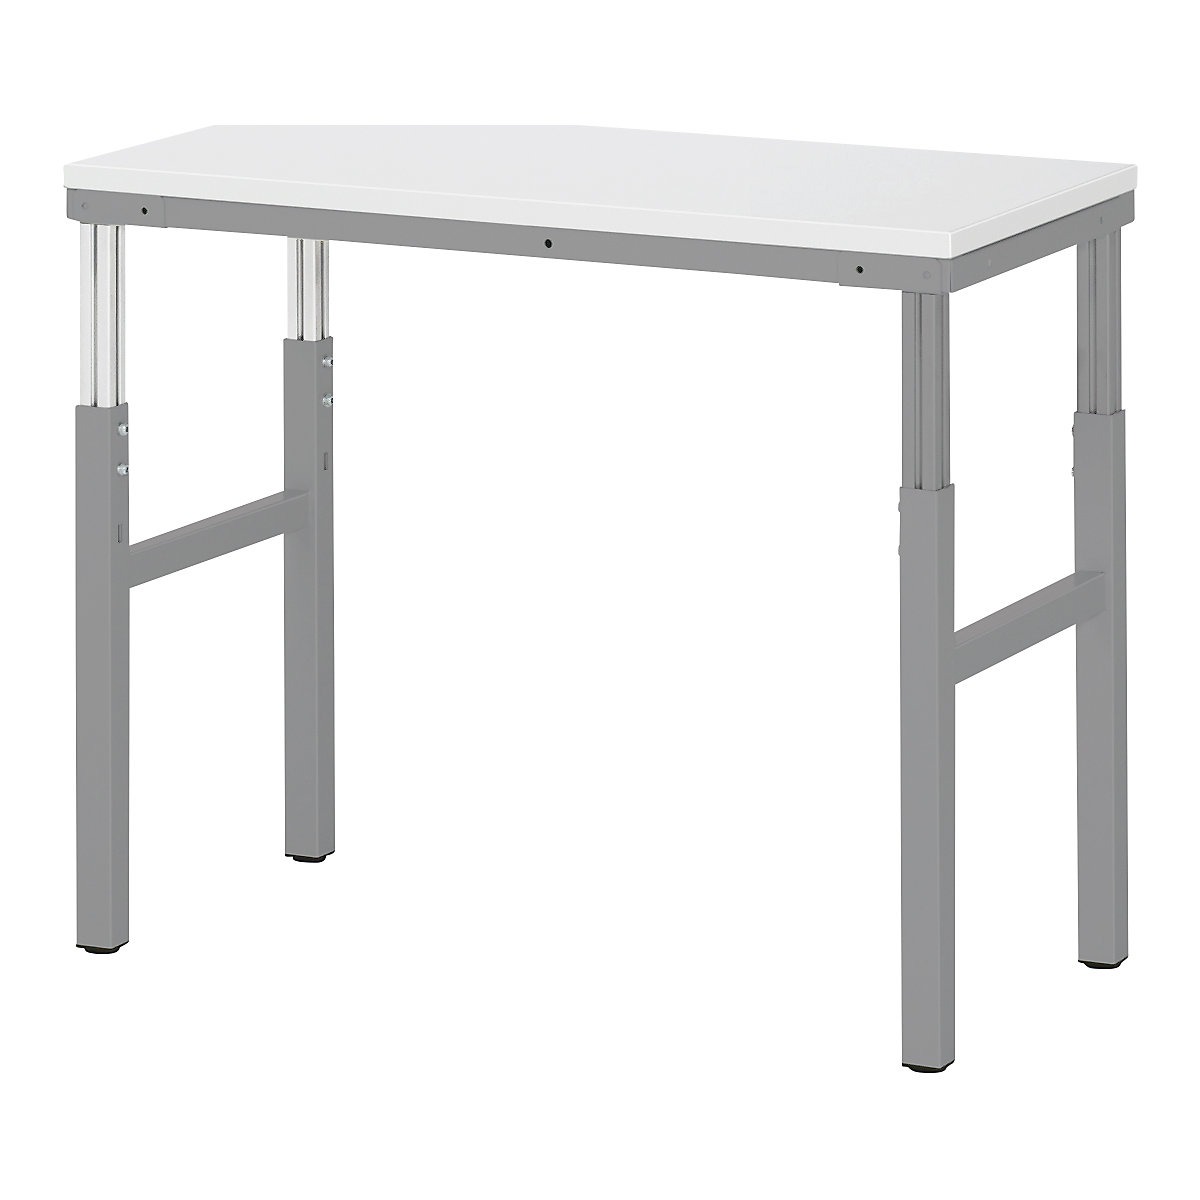 RAU – Pracovní stůl ESD, rozsah přestavování výšky 650 – 1000 mm, š x h 1500 x 500 mm